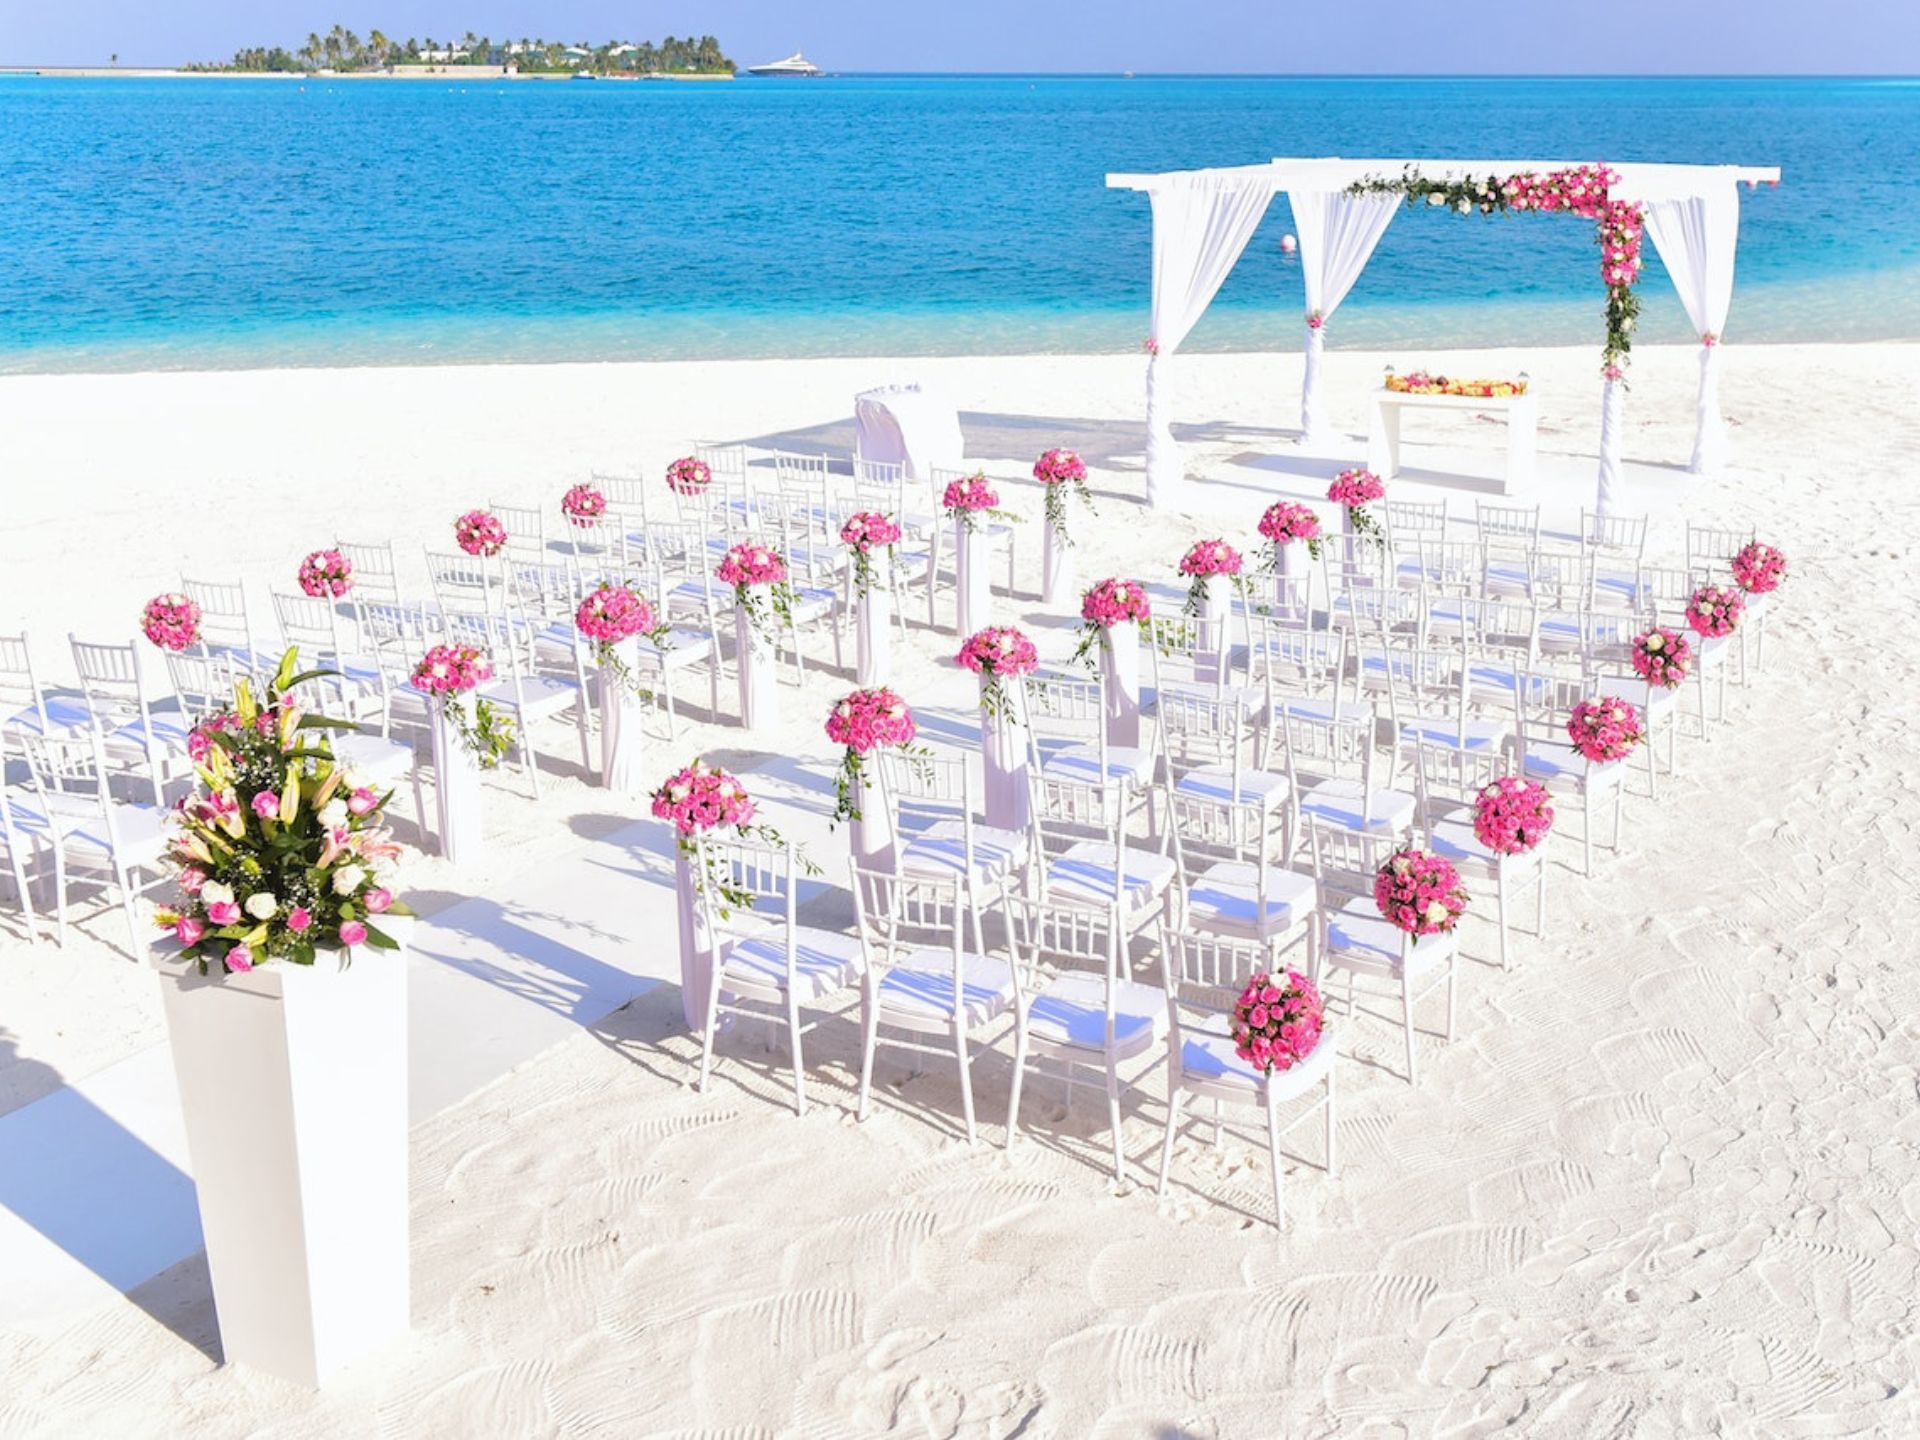 A wedding held on the beach.